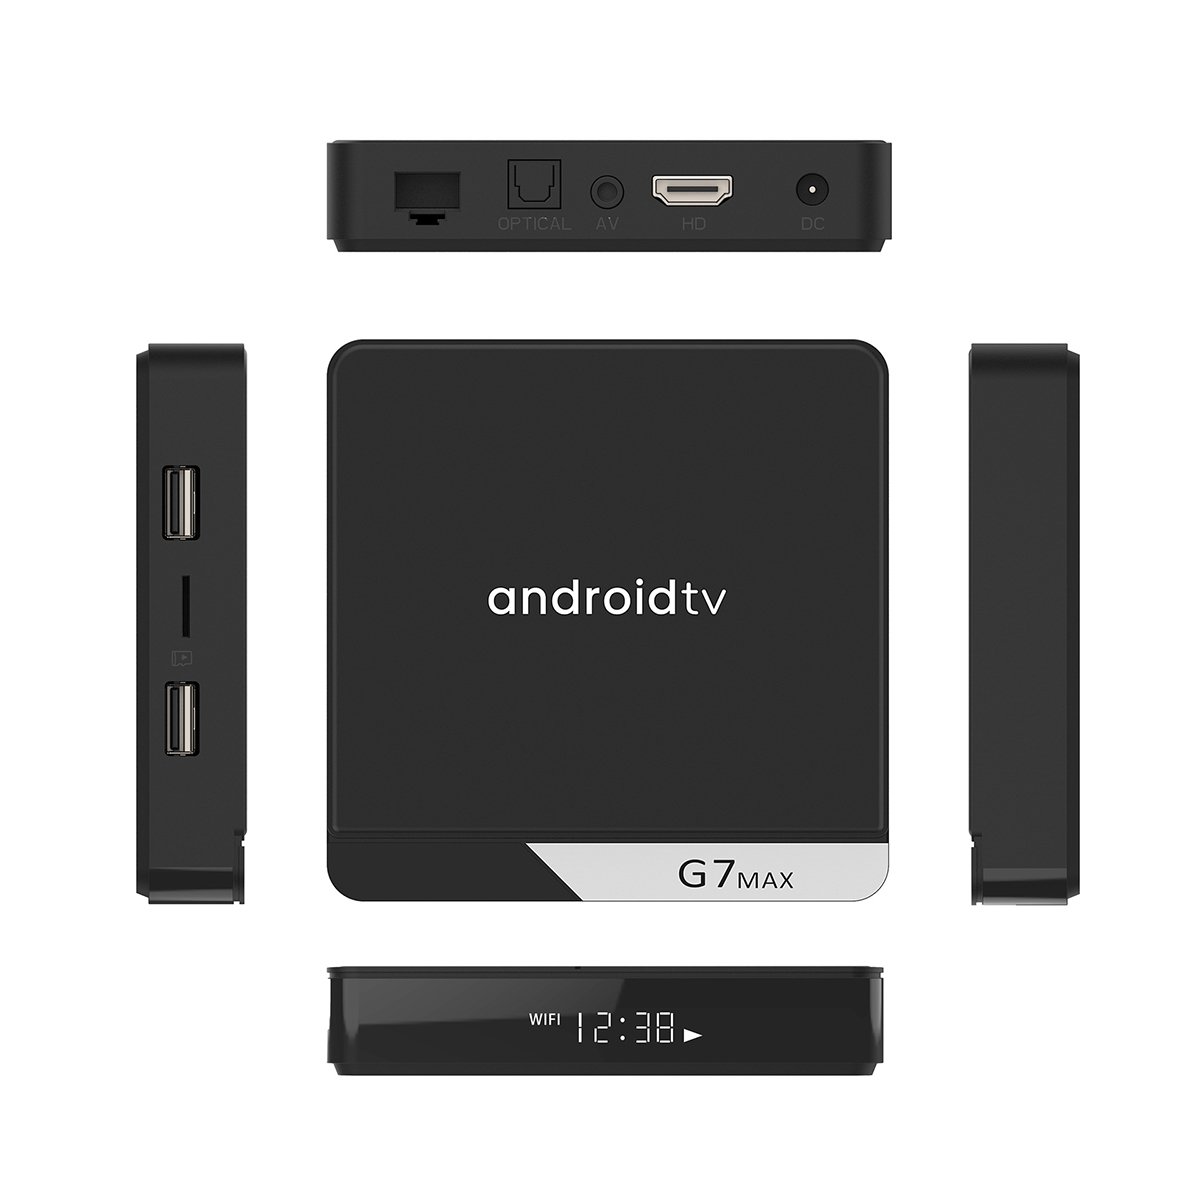 TV Box G7 Max Android TV 11 RAM 4G + 64G LAN 1000M Điều Khiển Bằng Giọng Nói